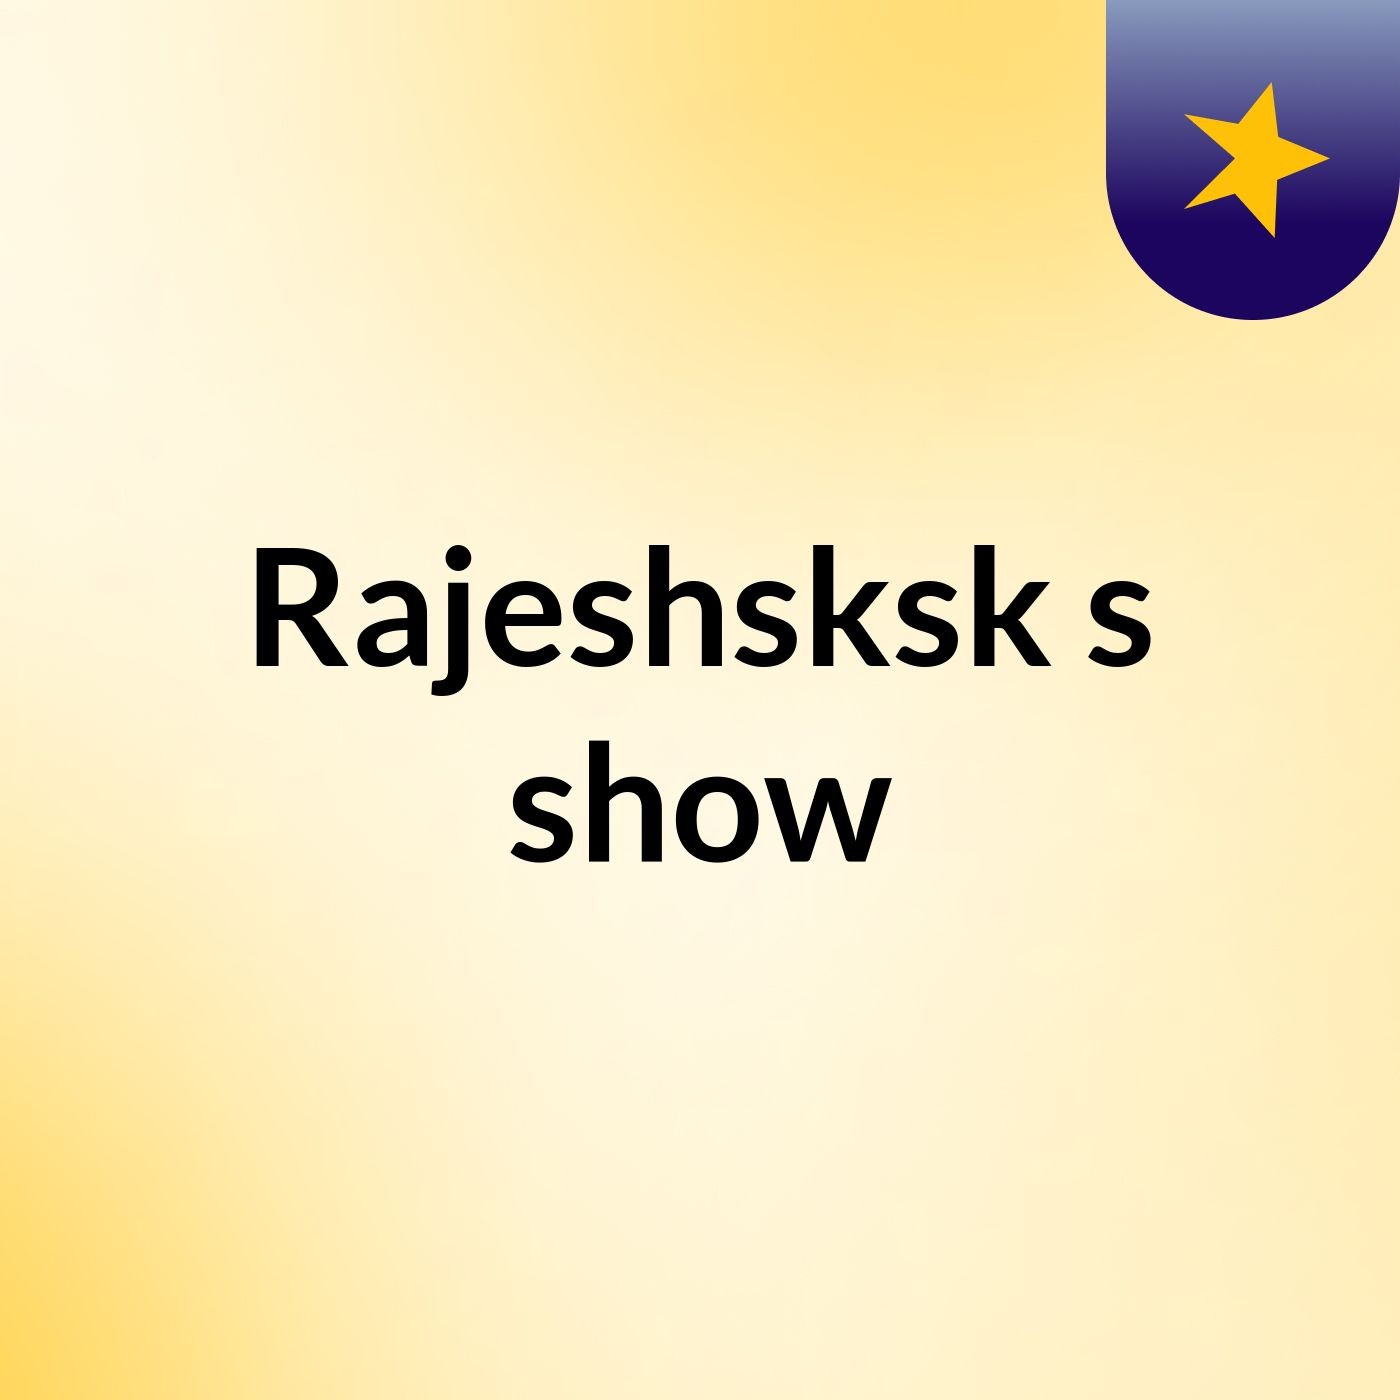 Episode 2 - Rajeshsksk's show